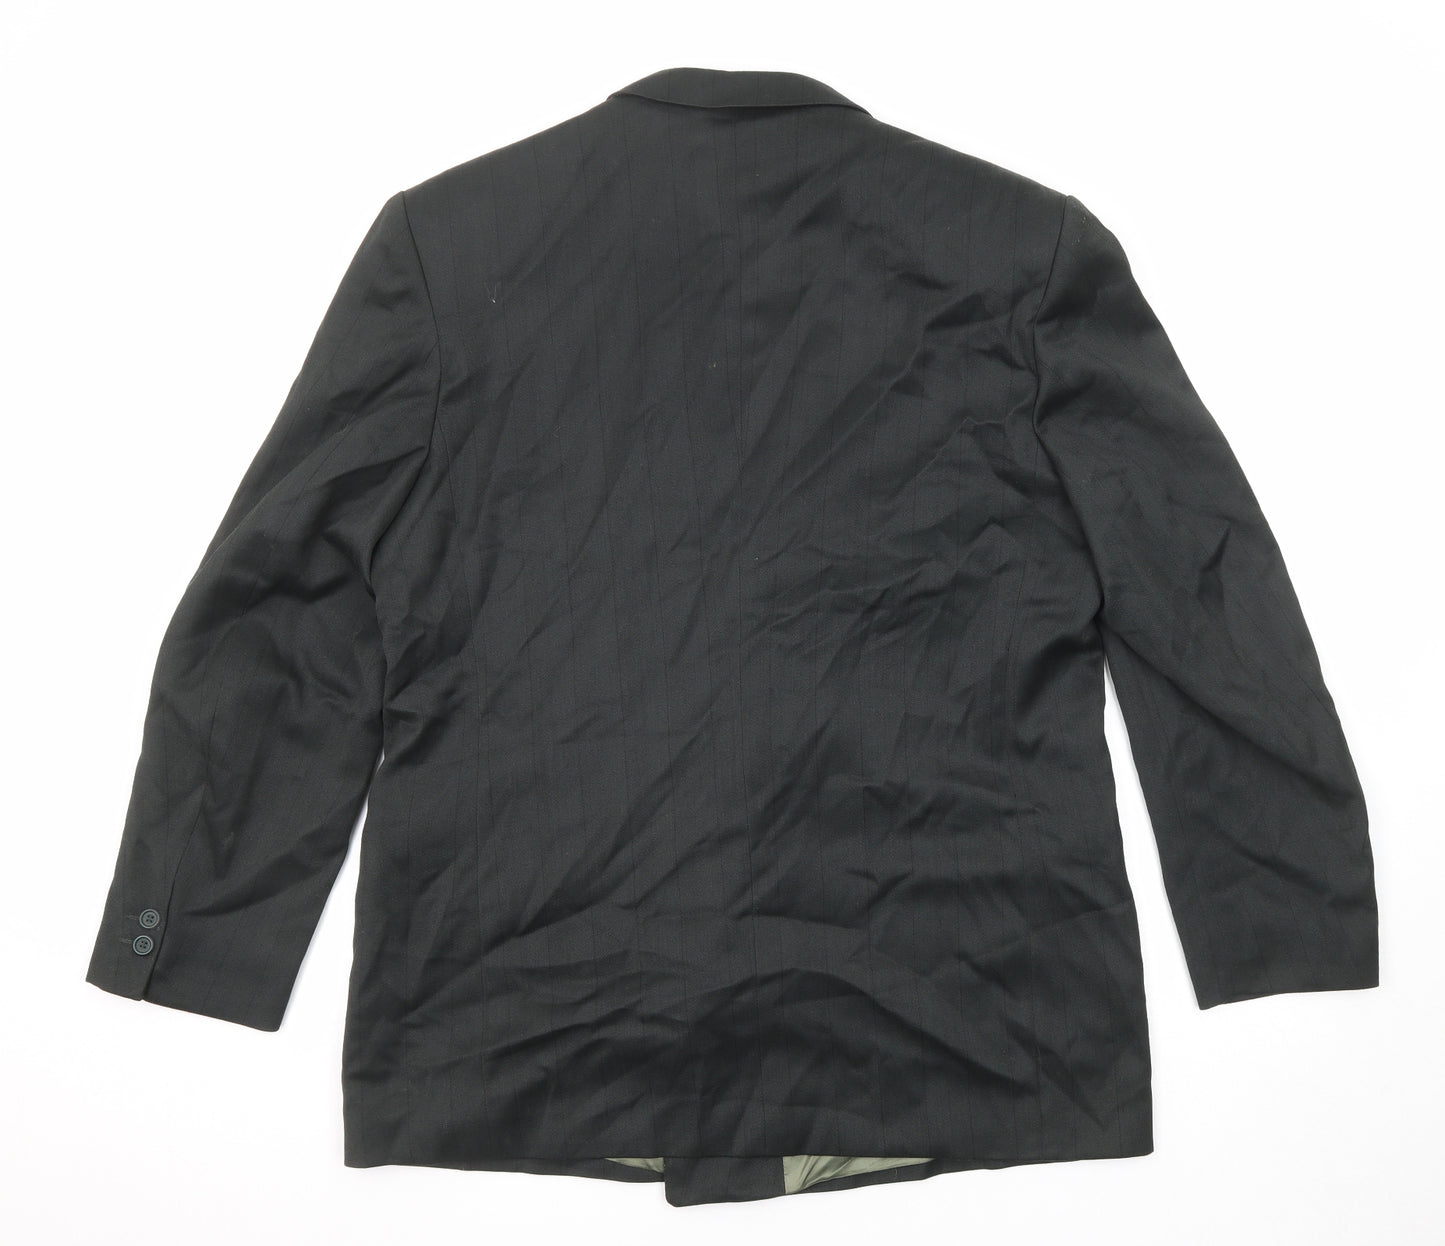 Fascino Mens Black Wool Jacket Suit Jacket Size 42 Regular